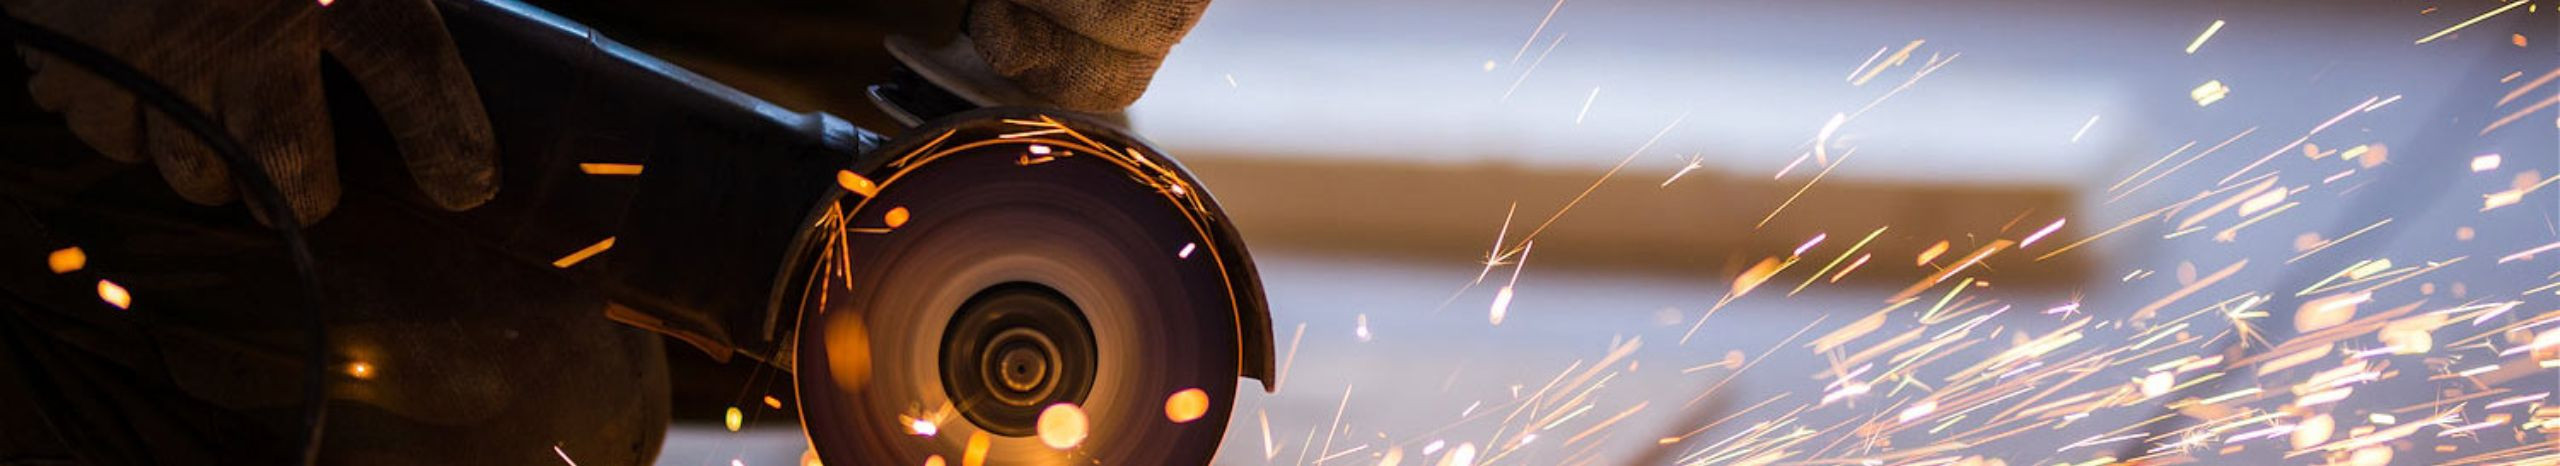 Suurim mainega ettevõte GEOWELD OÜ, maineskoor 2520, aktiivseid äriseoseid 3. Tegutseb peamiselt valdkonnas: Metalltoodete tootmine.